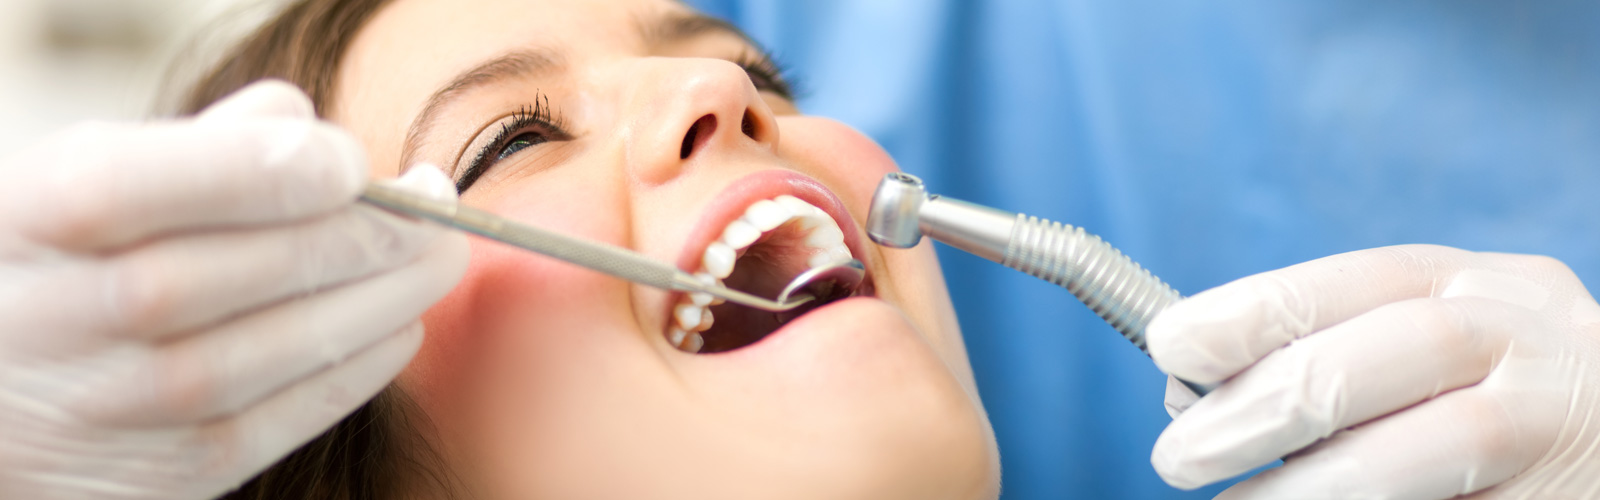 Teeth extraction